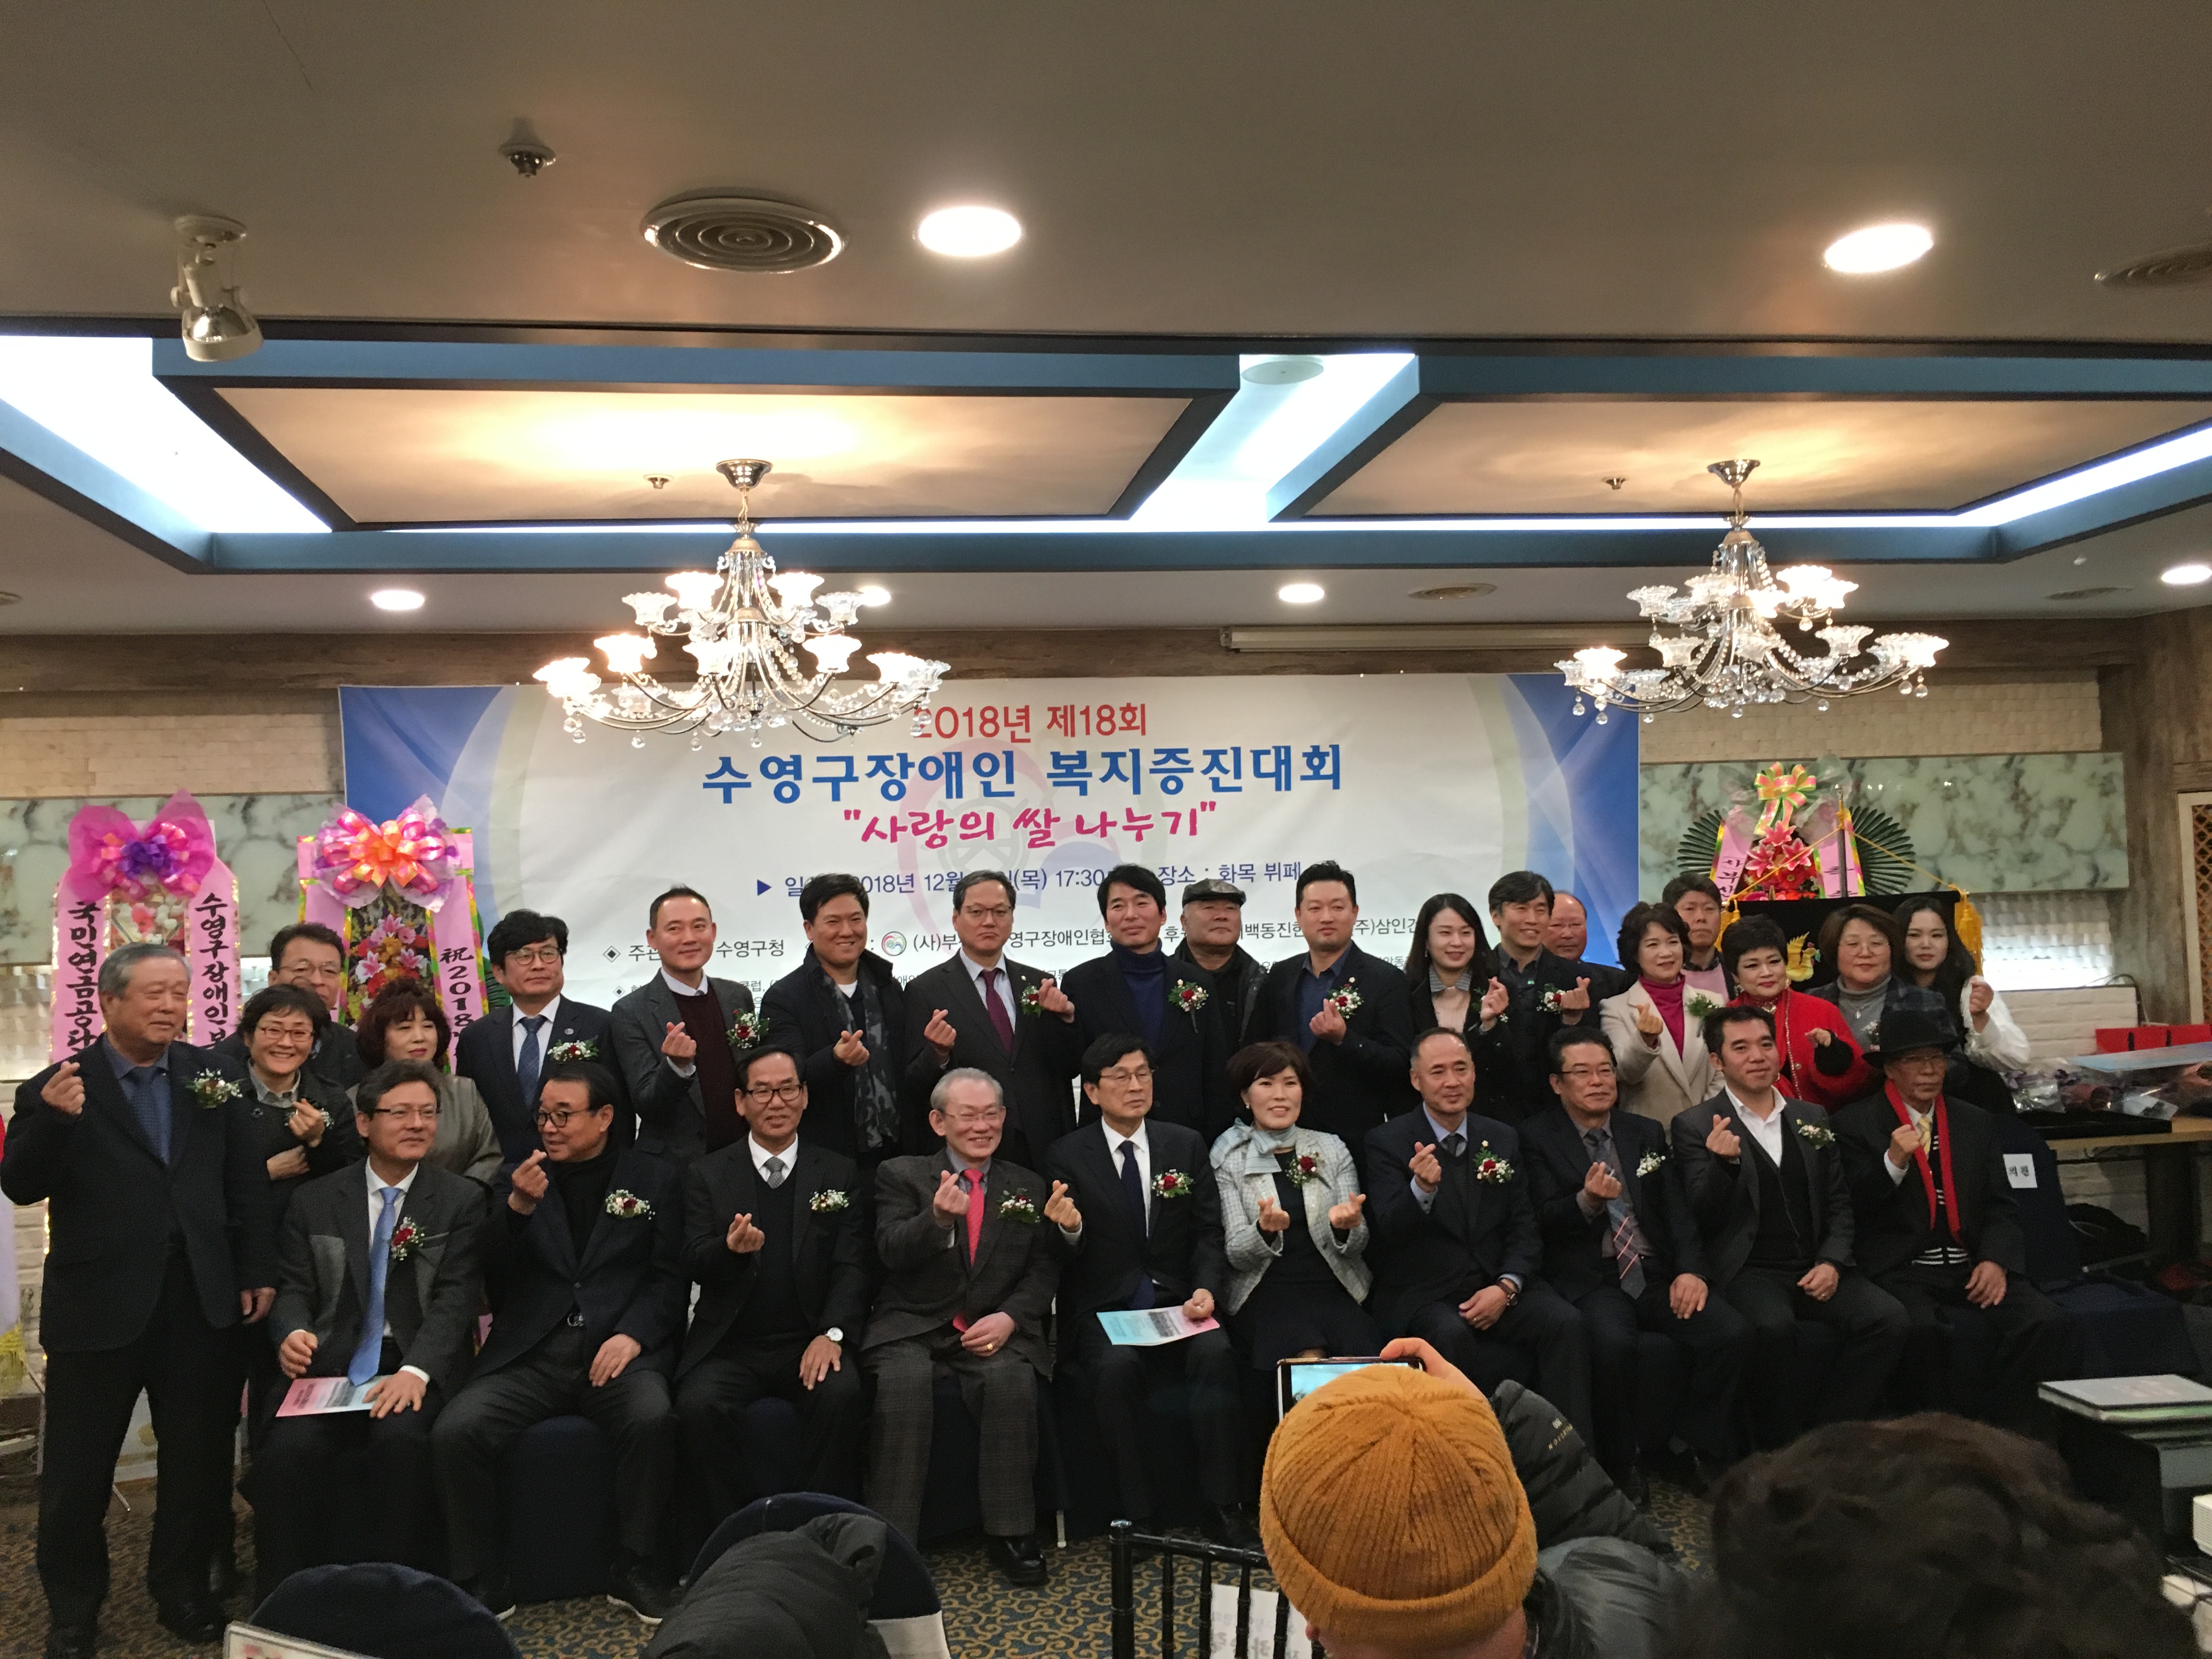 2018.12.13. 장애인 복지 증진대회